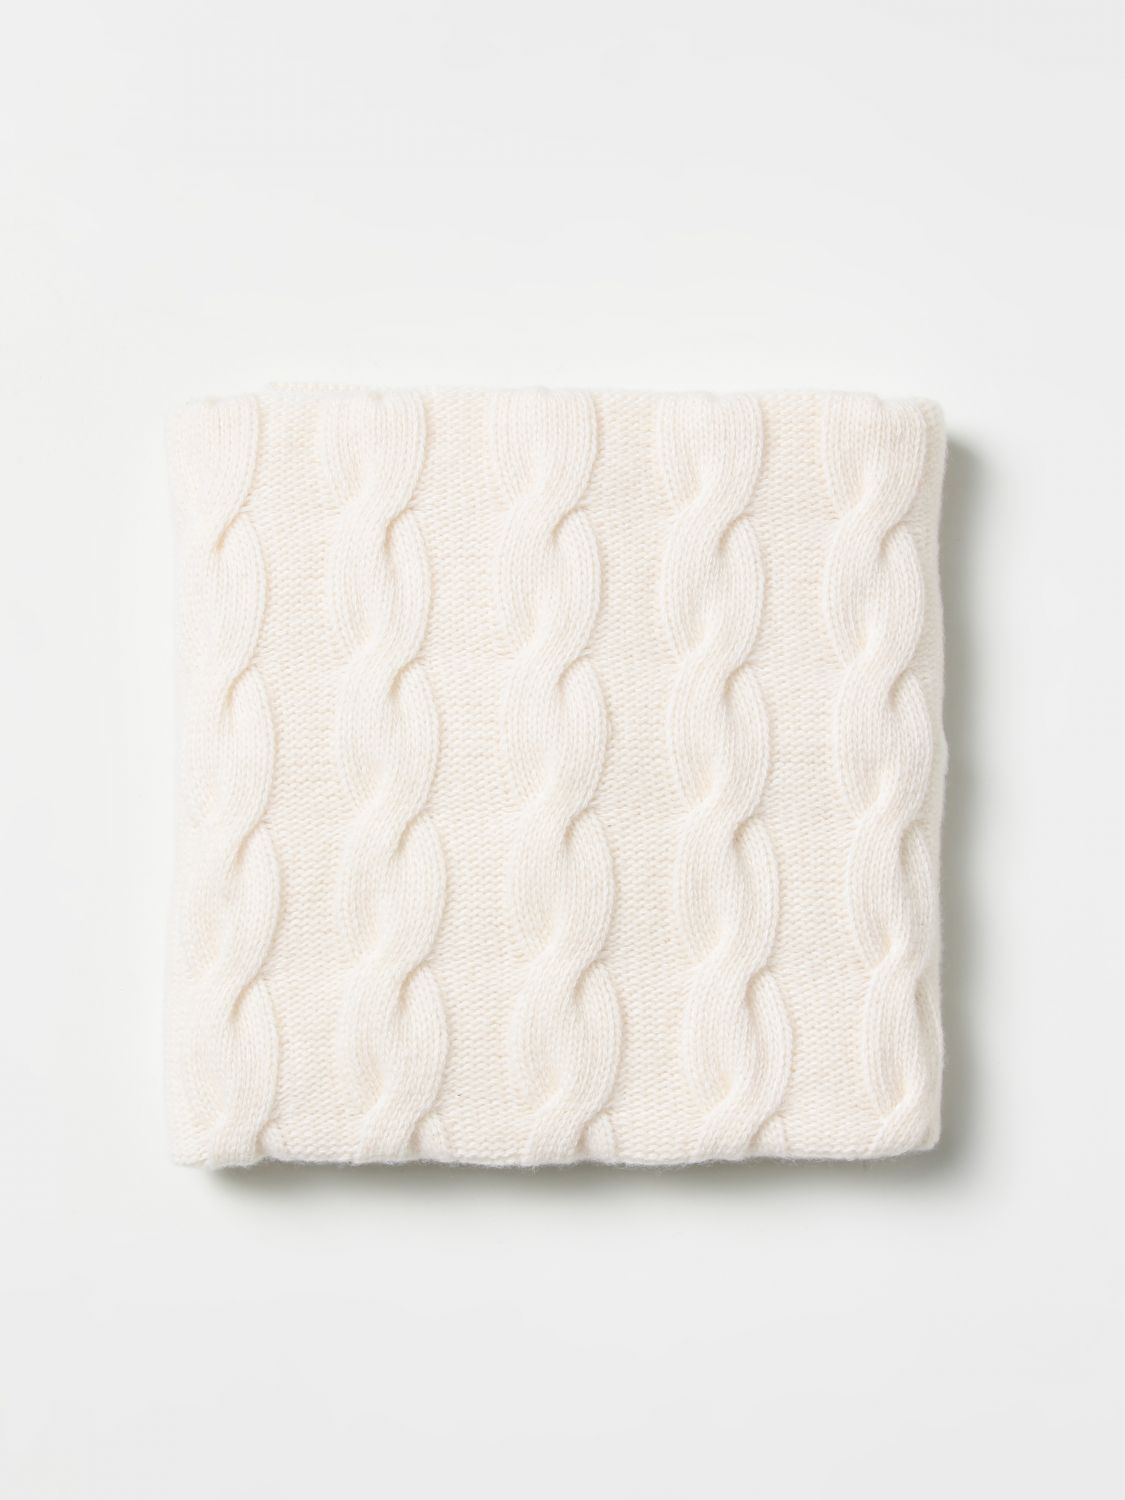 Copertina Il Gufo: Coperta Il Gufo in lana merino latte 1